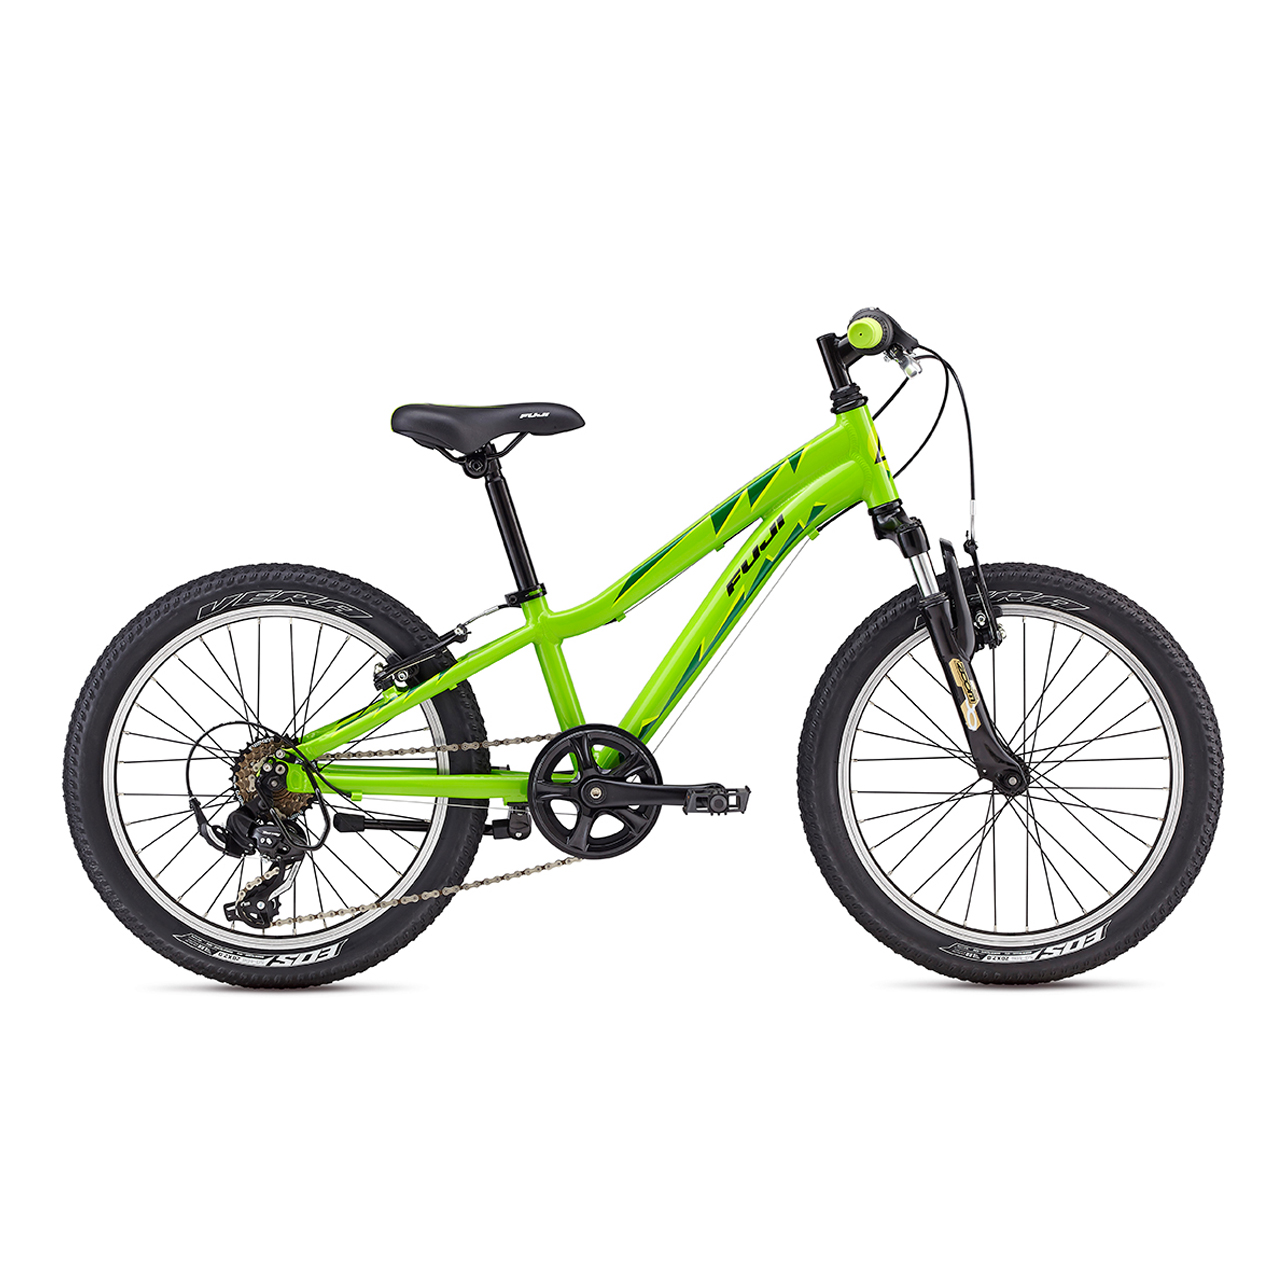 دوچرخه بچه گانه فوجی Dynamite 20 رنگ سبز 2017